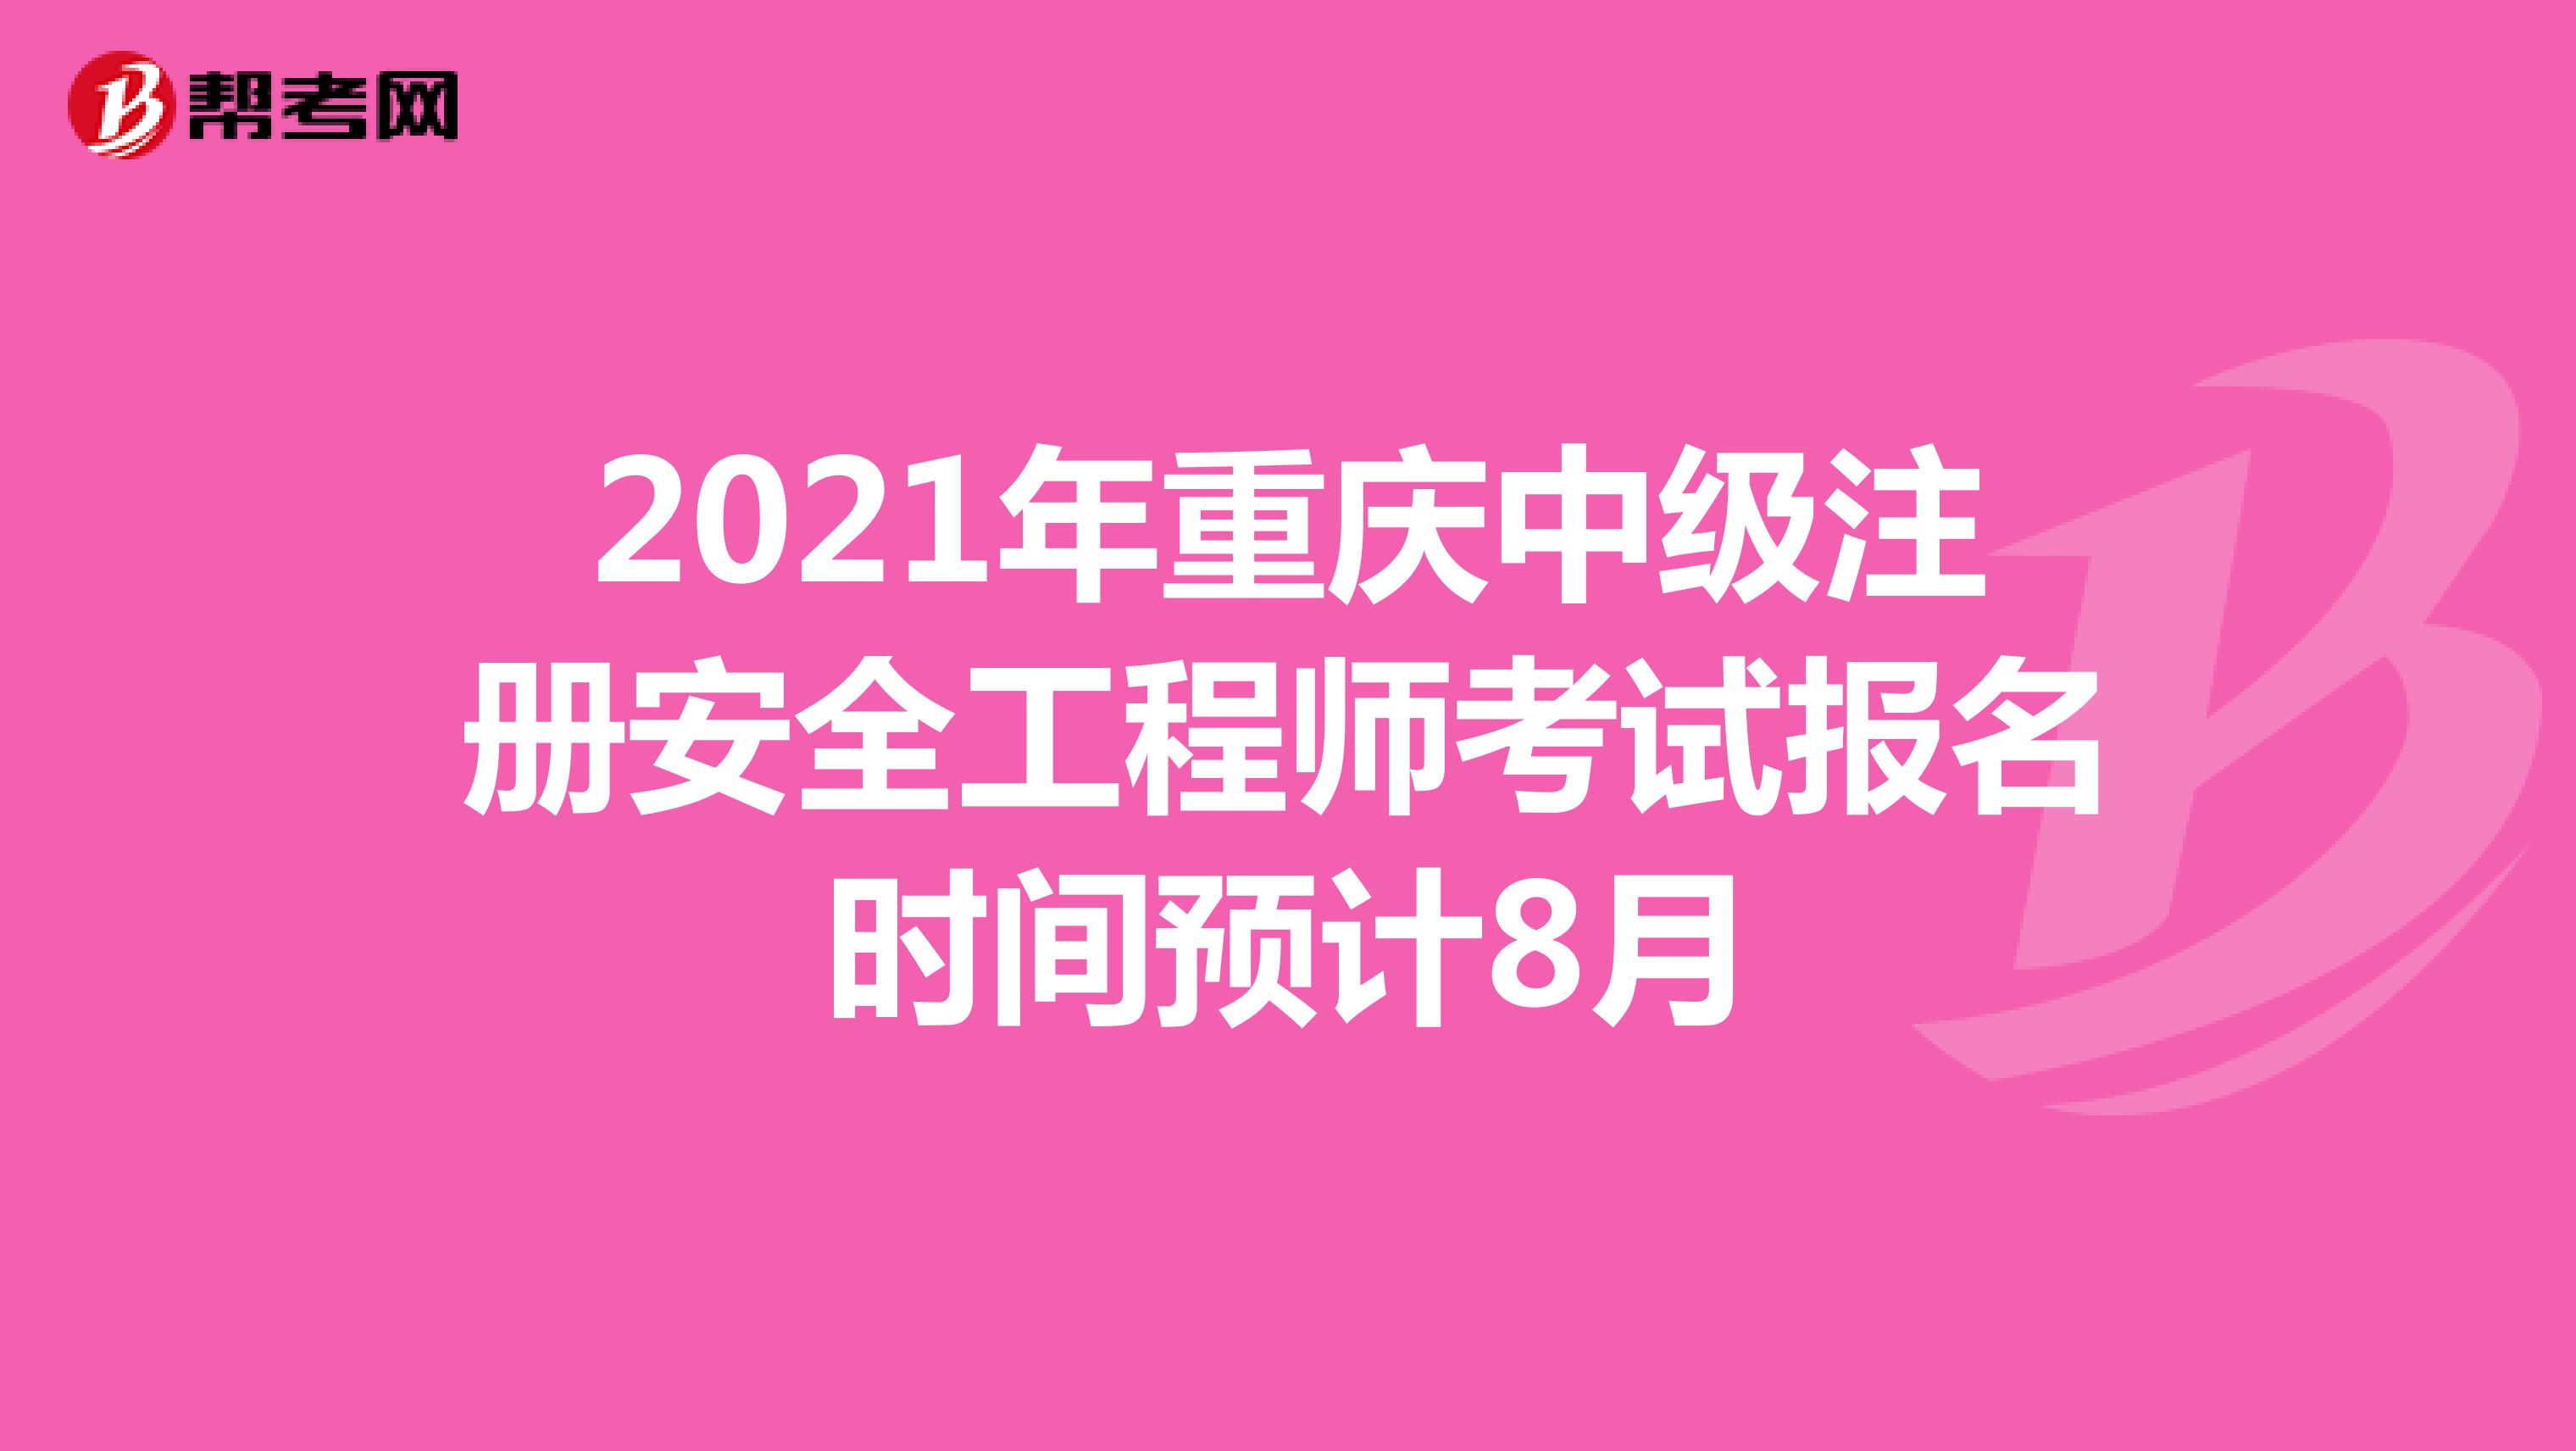 2021年重庆中级注册安全工程师考试报名时间预计8月